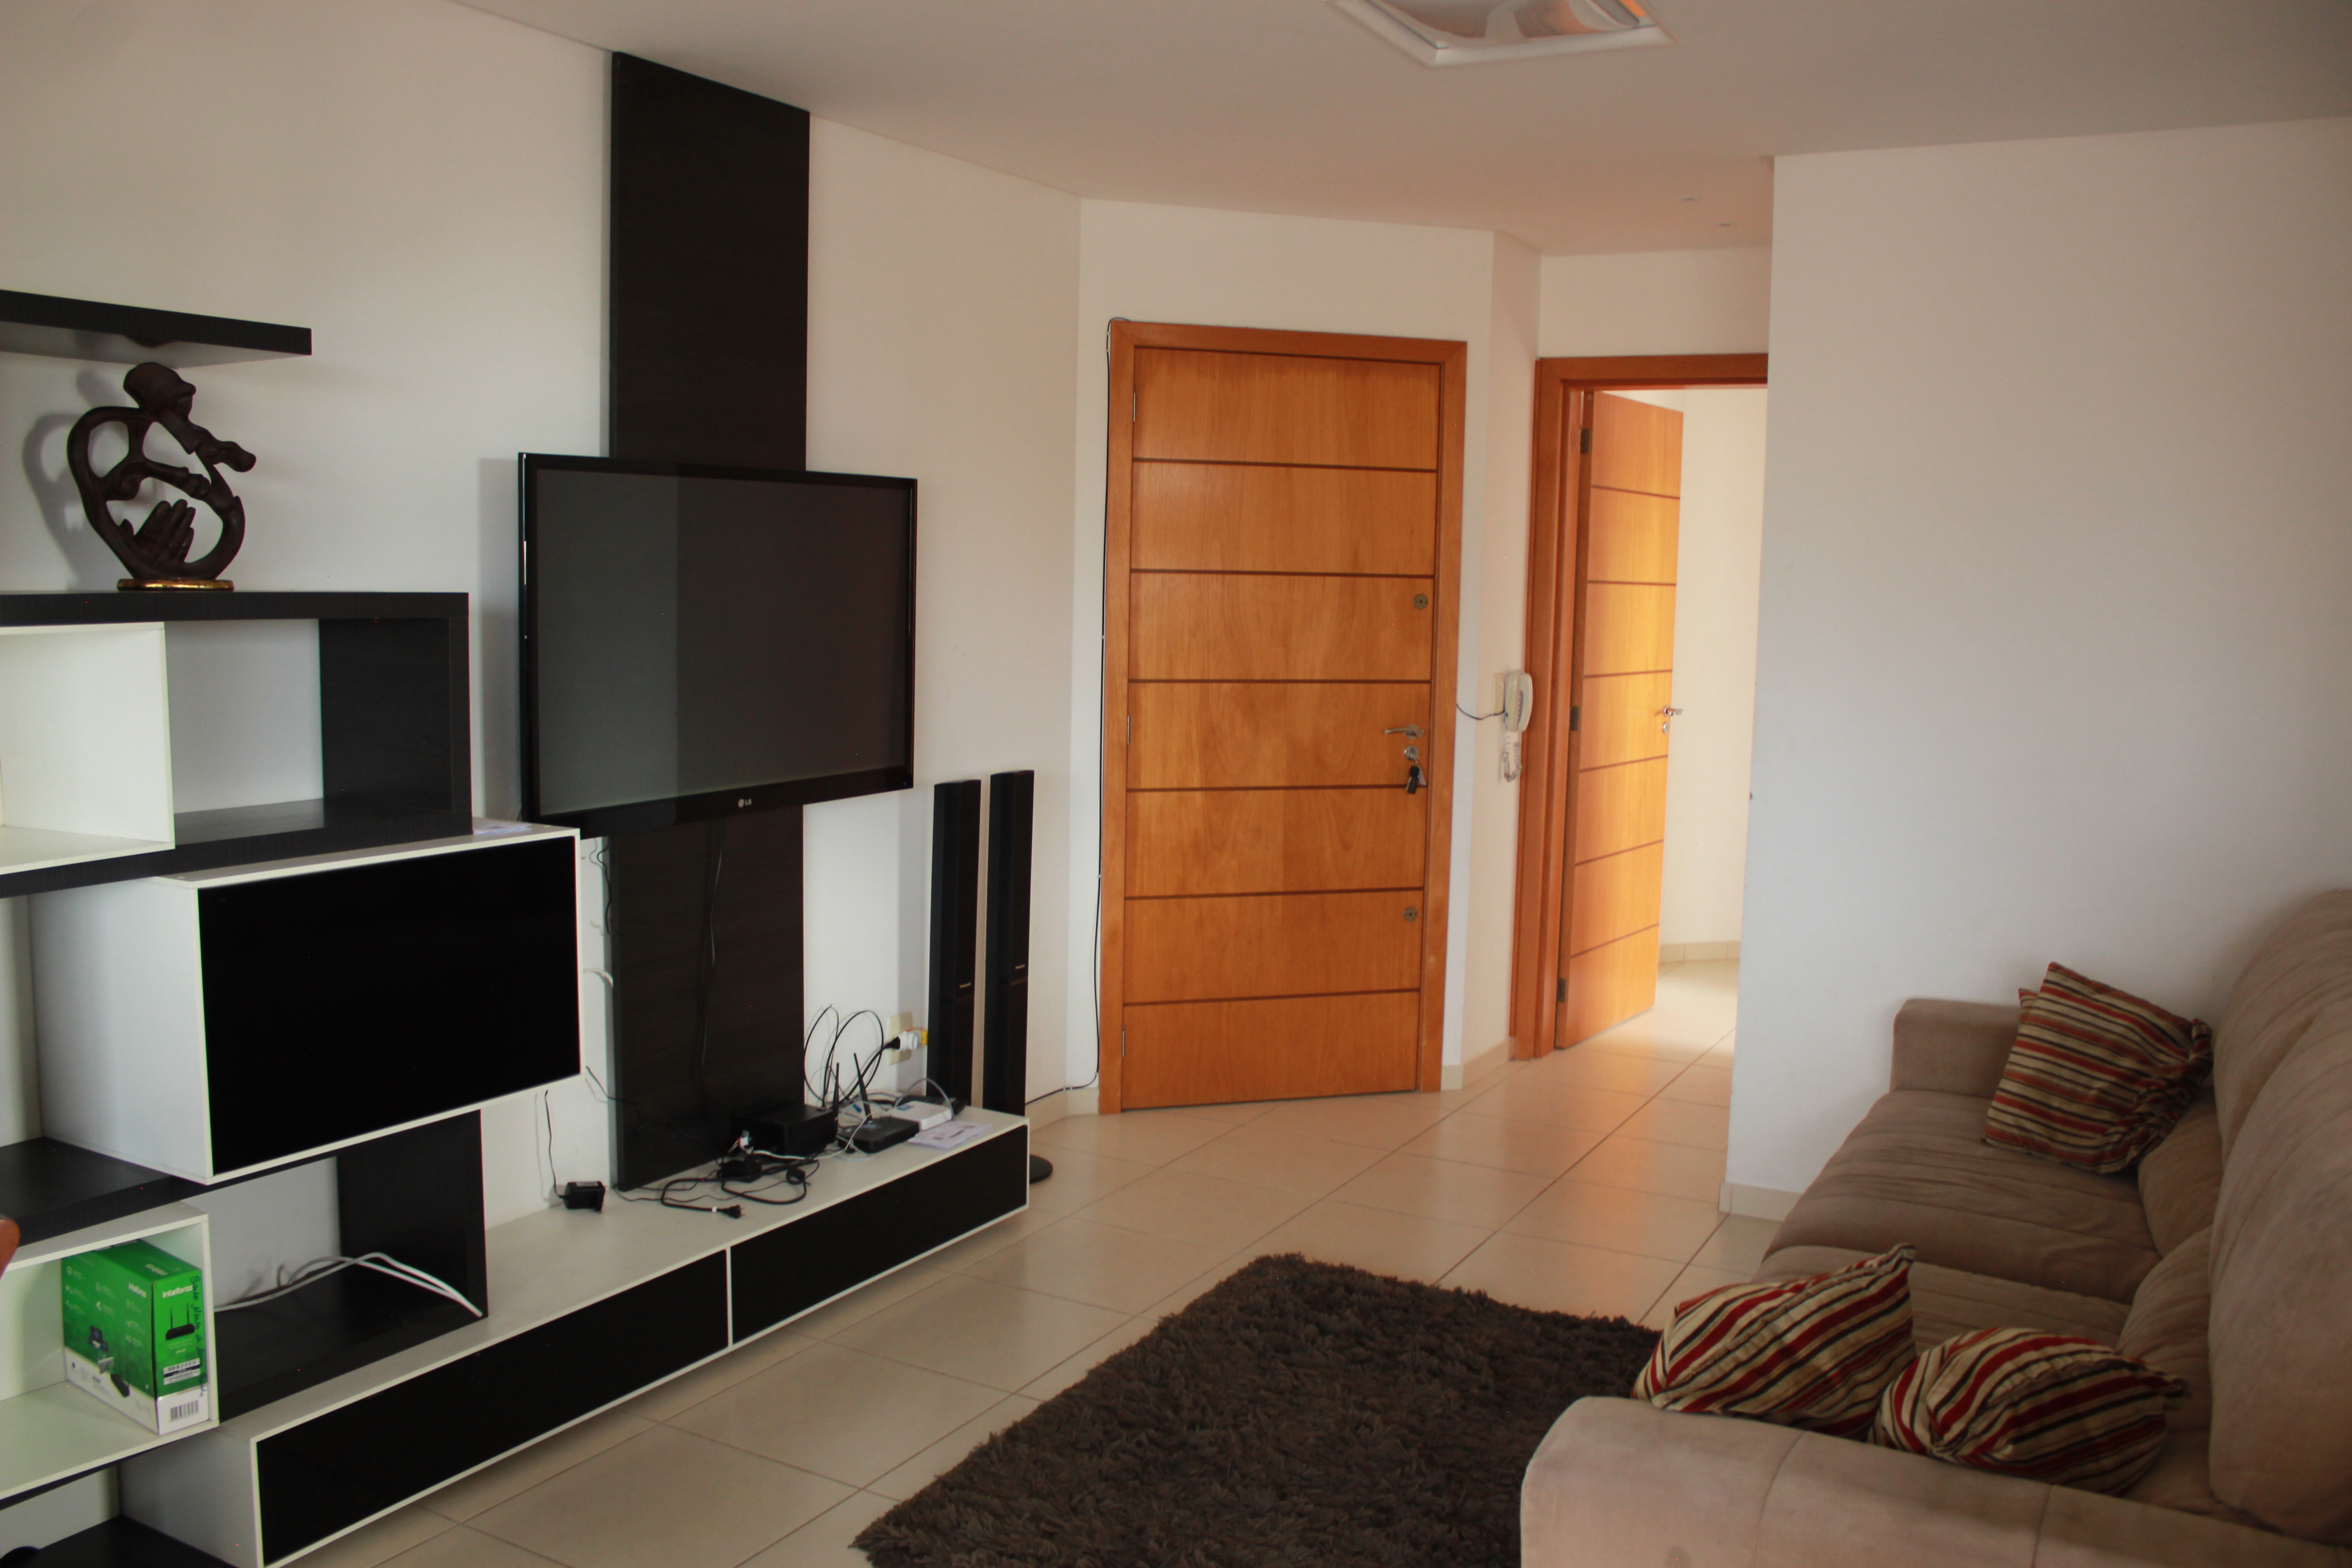 Apartamento 3 dormitórios em Capão da Canoa | Ref.: 3018